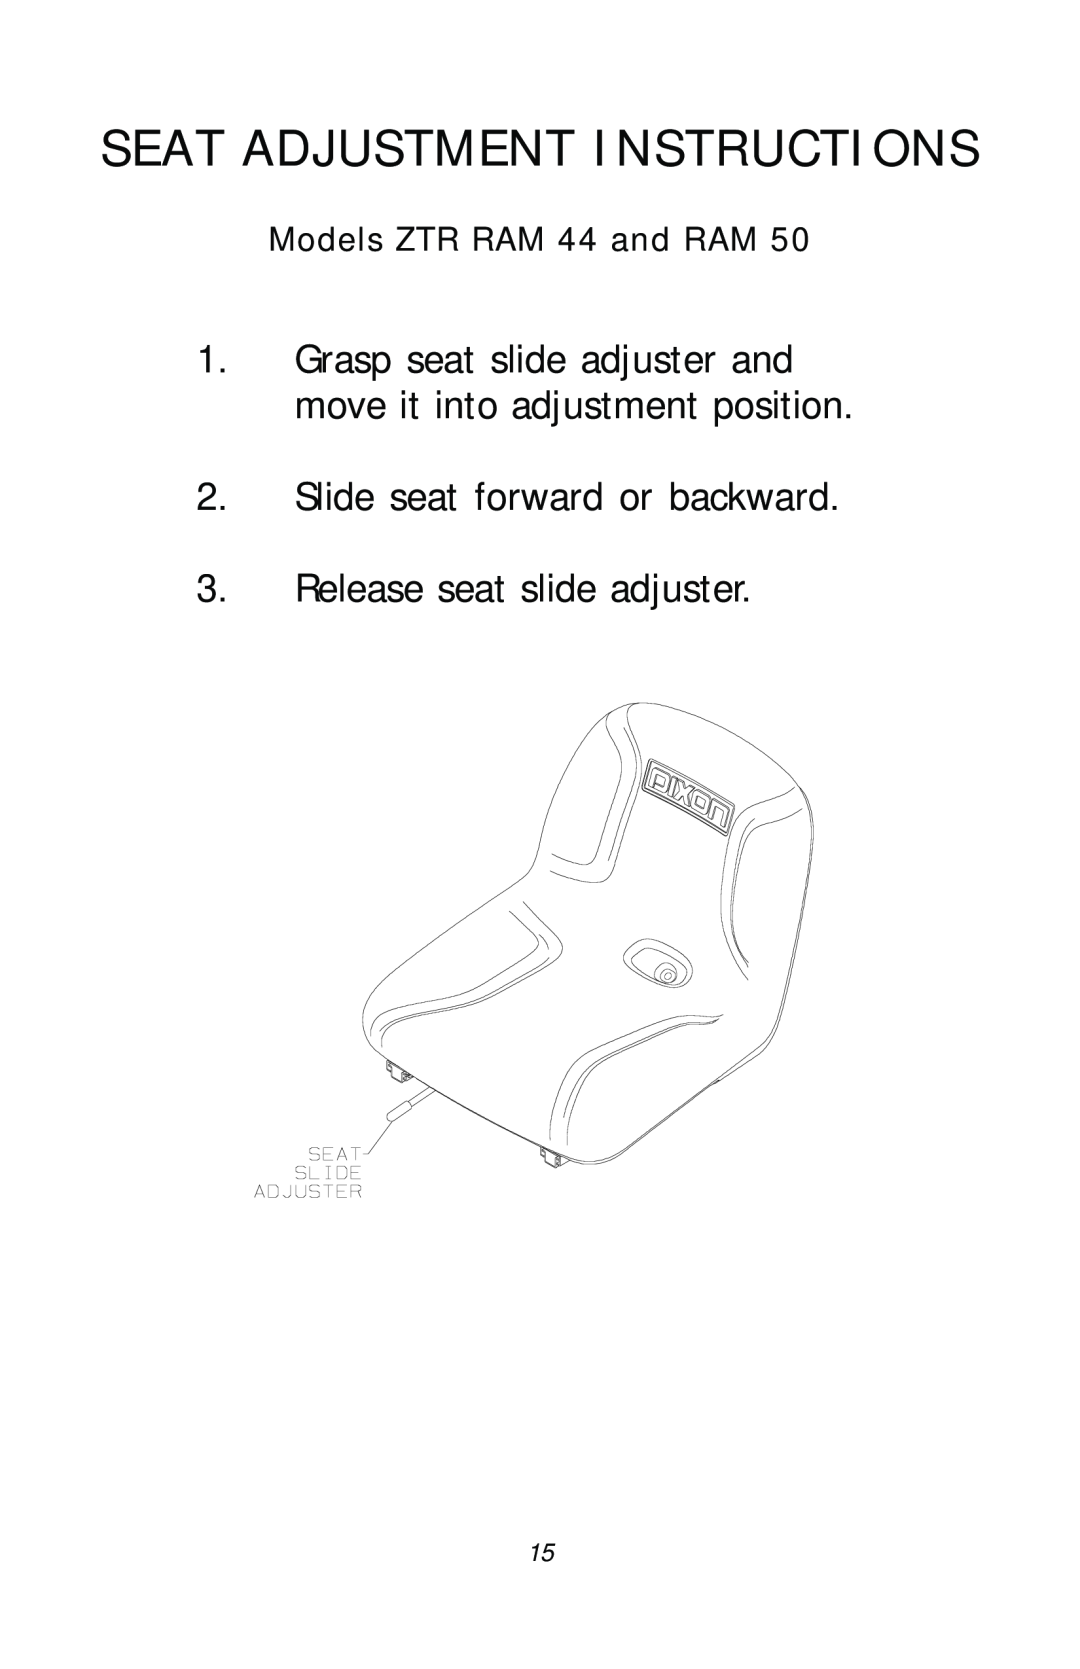 Dixon 17411-1103, ZTR RAM 50 Seat Adjustment Instructions, Slide seat forward or backward, Release seat slide adjuster 